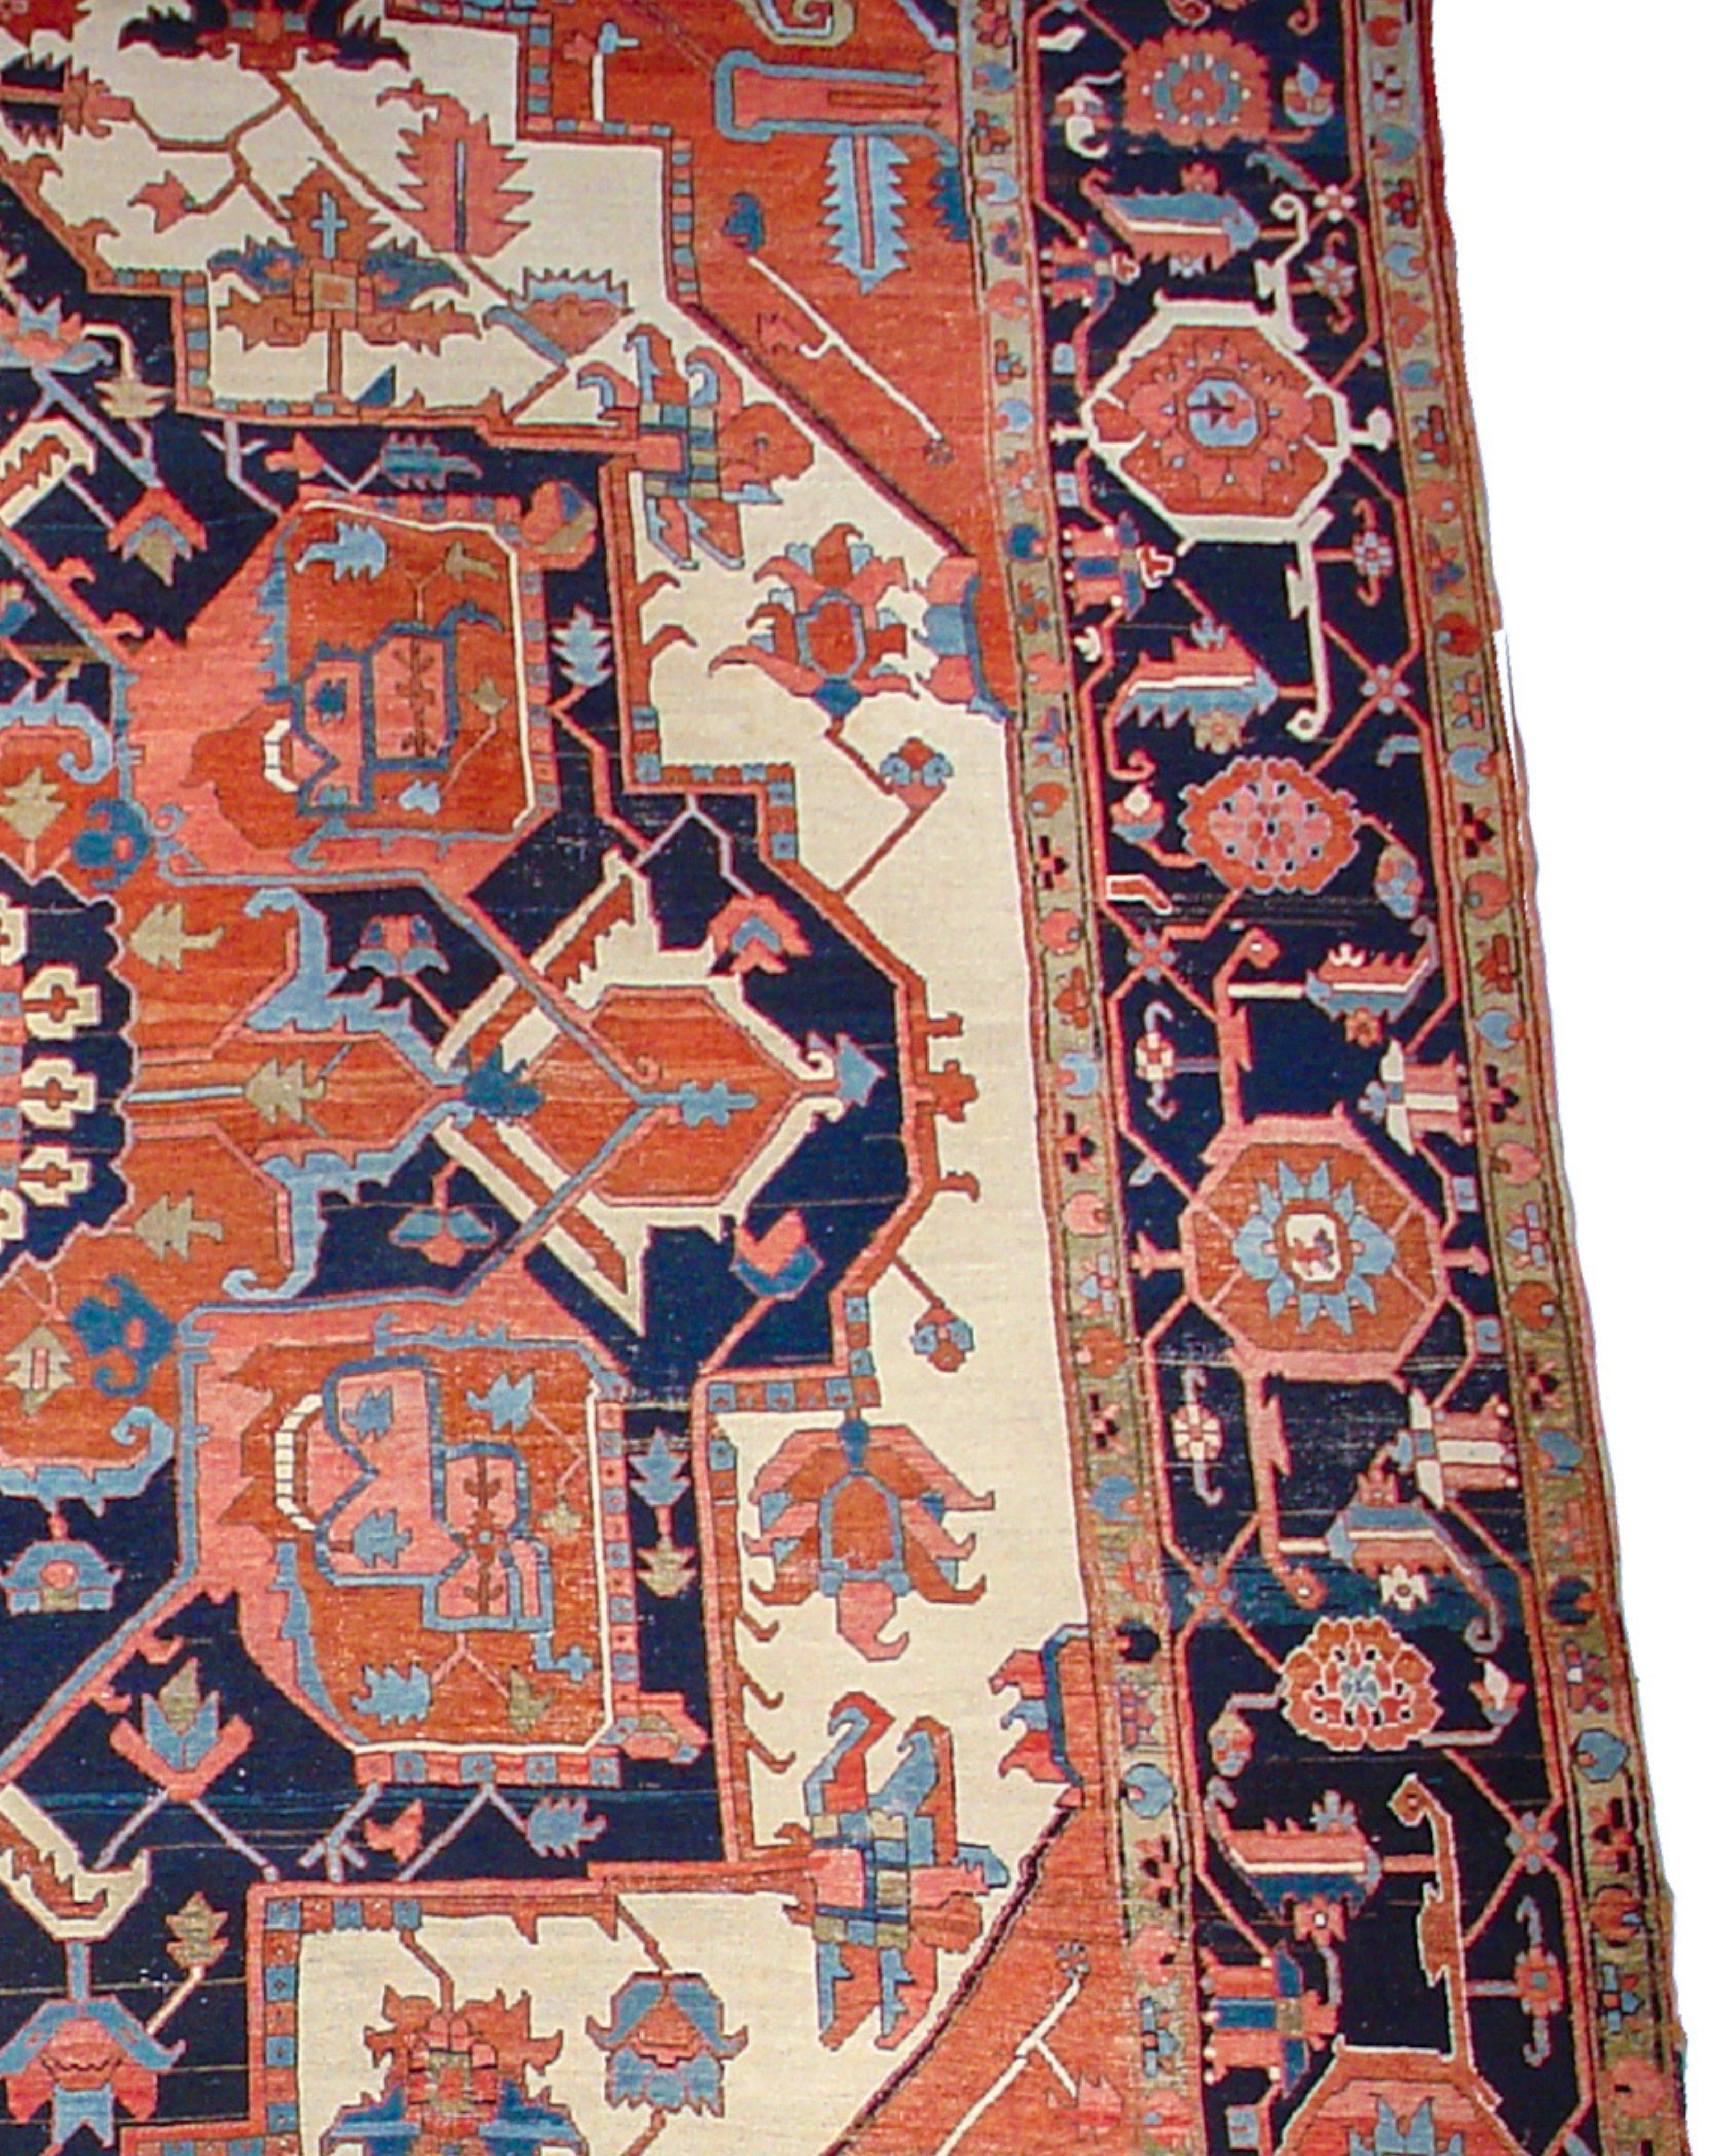 Antiker großer persischer Serapi-Teppich, spätes 19. Jahrhundert

Zusätzliche Informationen:
Abmessungen: 10'0